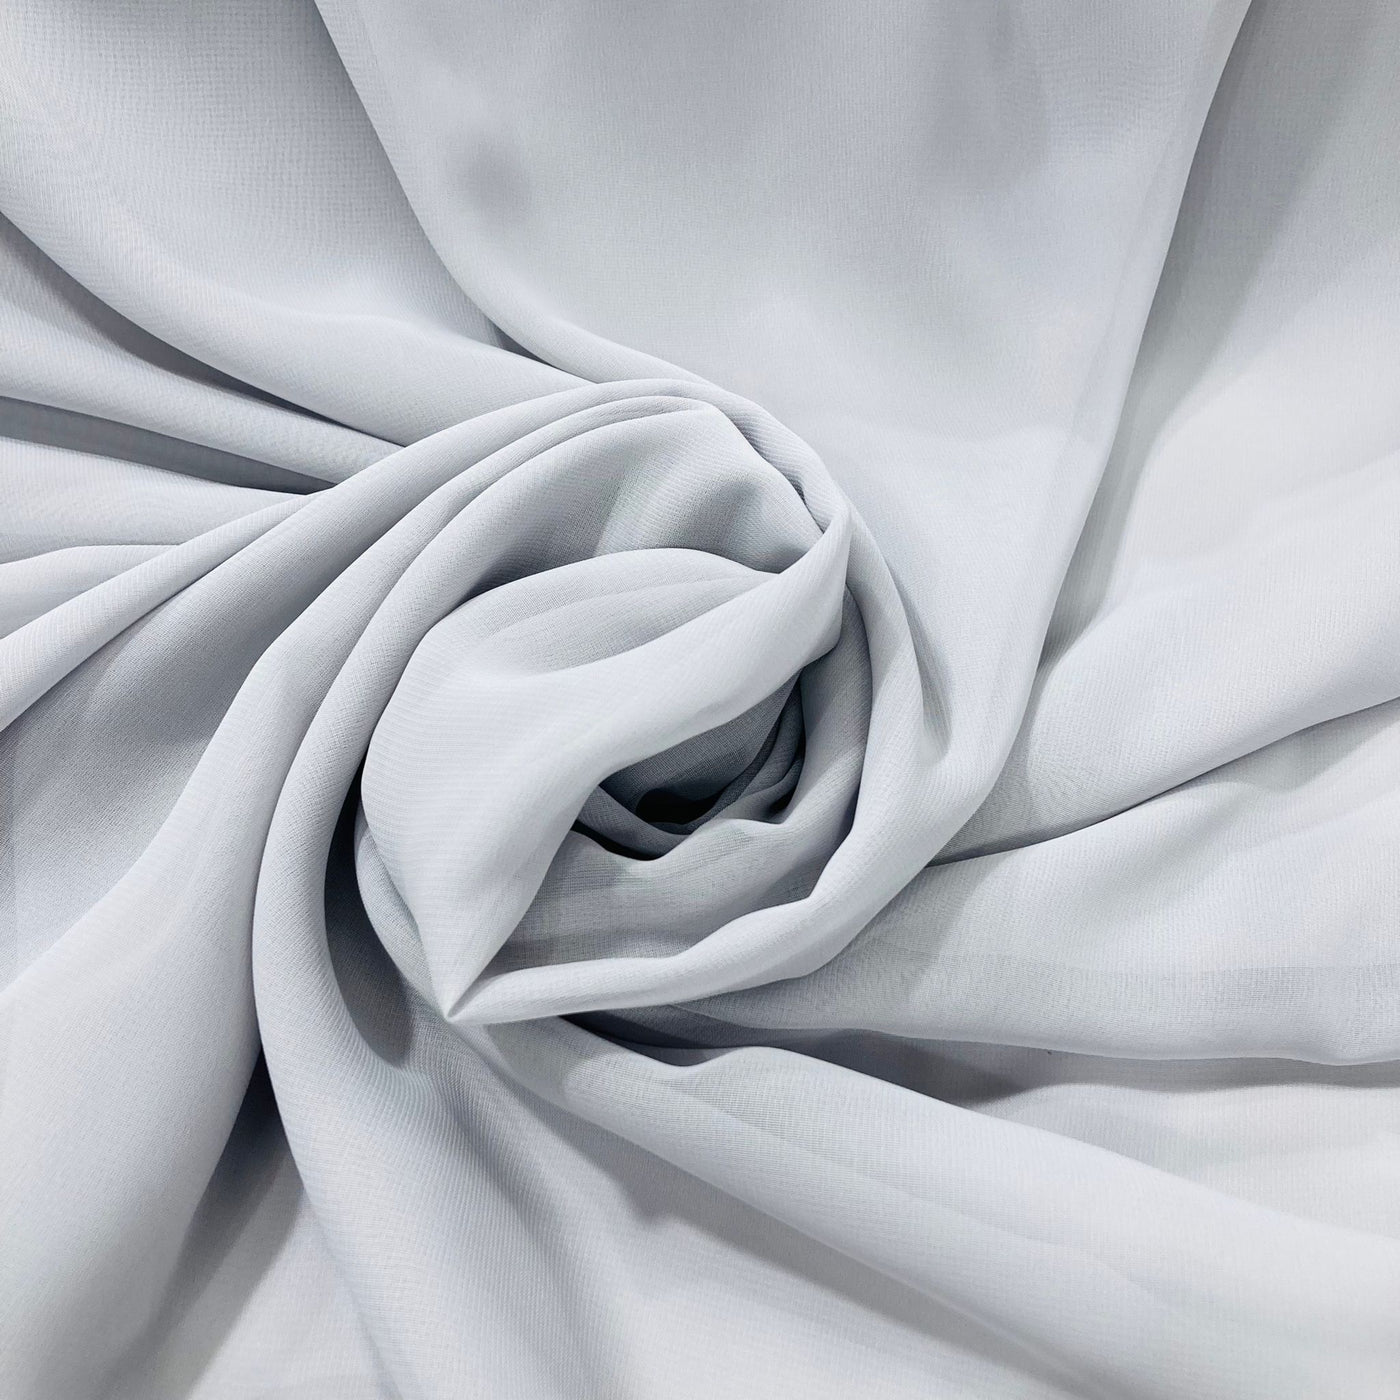 Chiffon Fabric 60",100% Polyester. Lace Usa